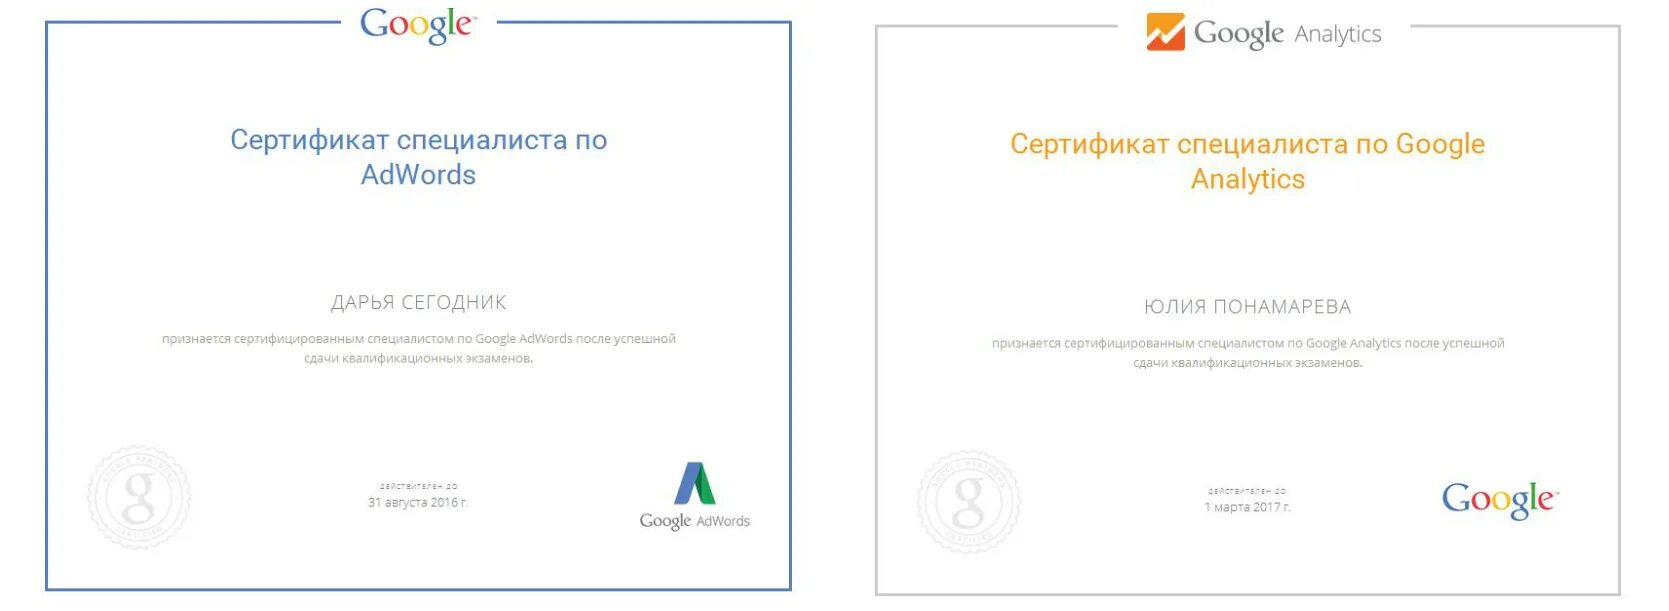 Сертификат Google. Сертификат гугл Аналитика. Сертификат Google навыки. Сертификат специалиста по Google Adwords.